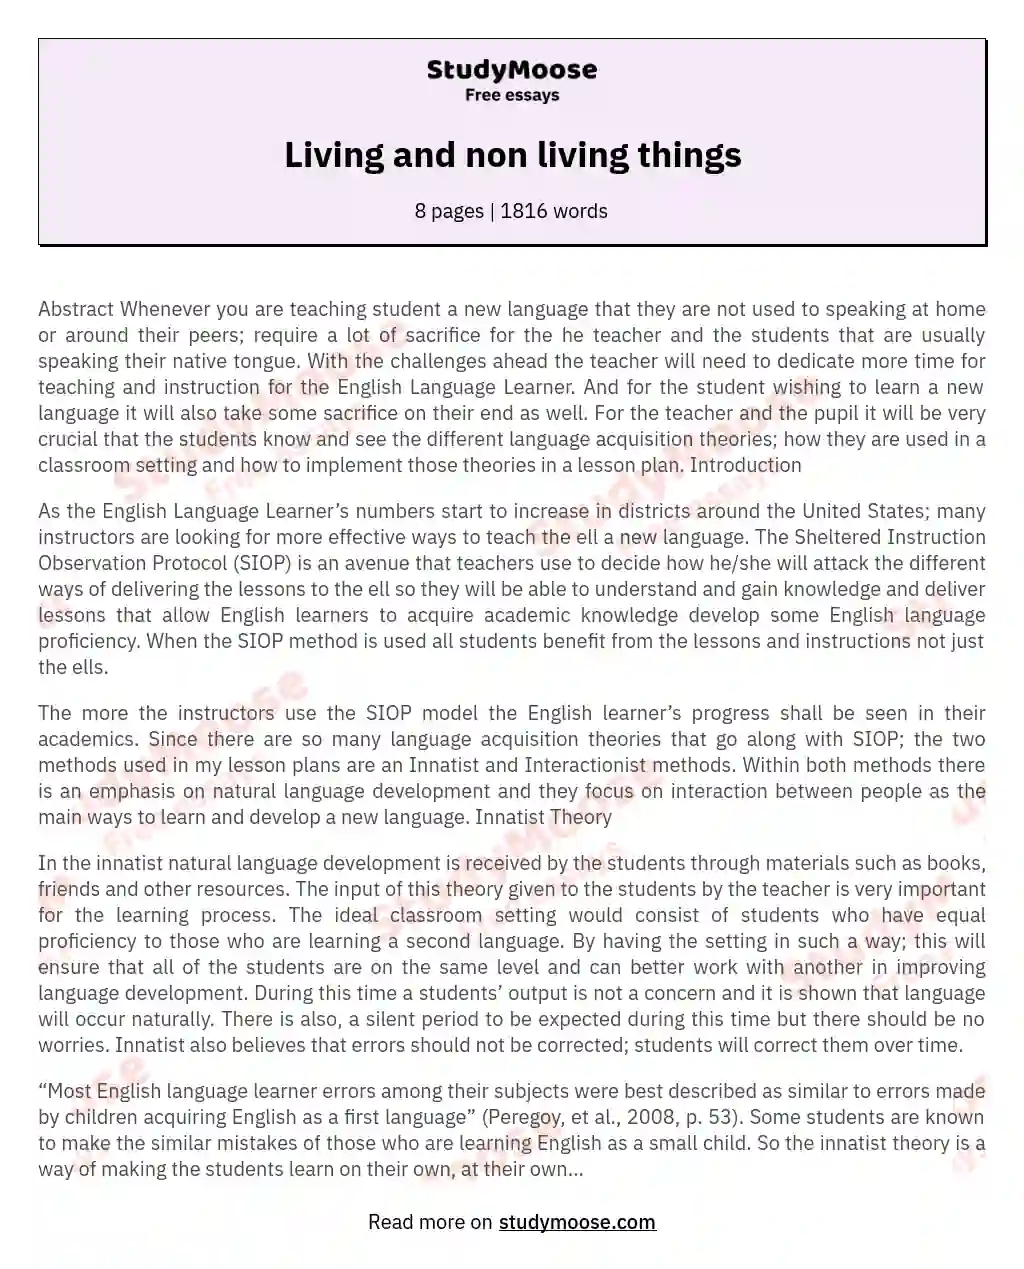 living things essay